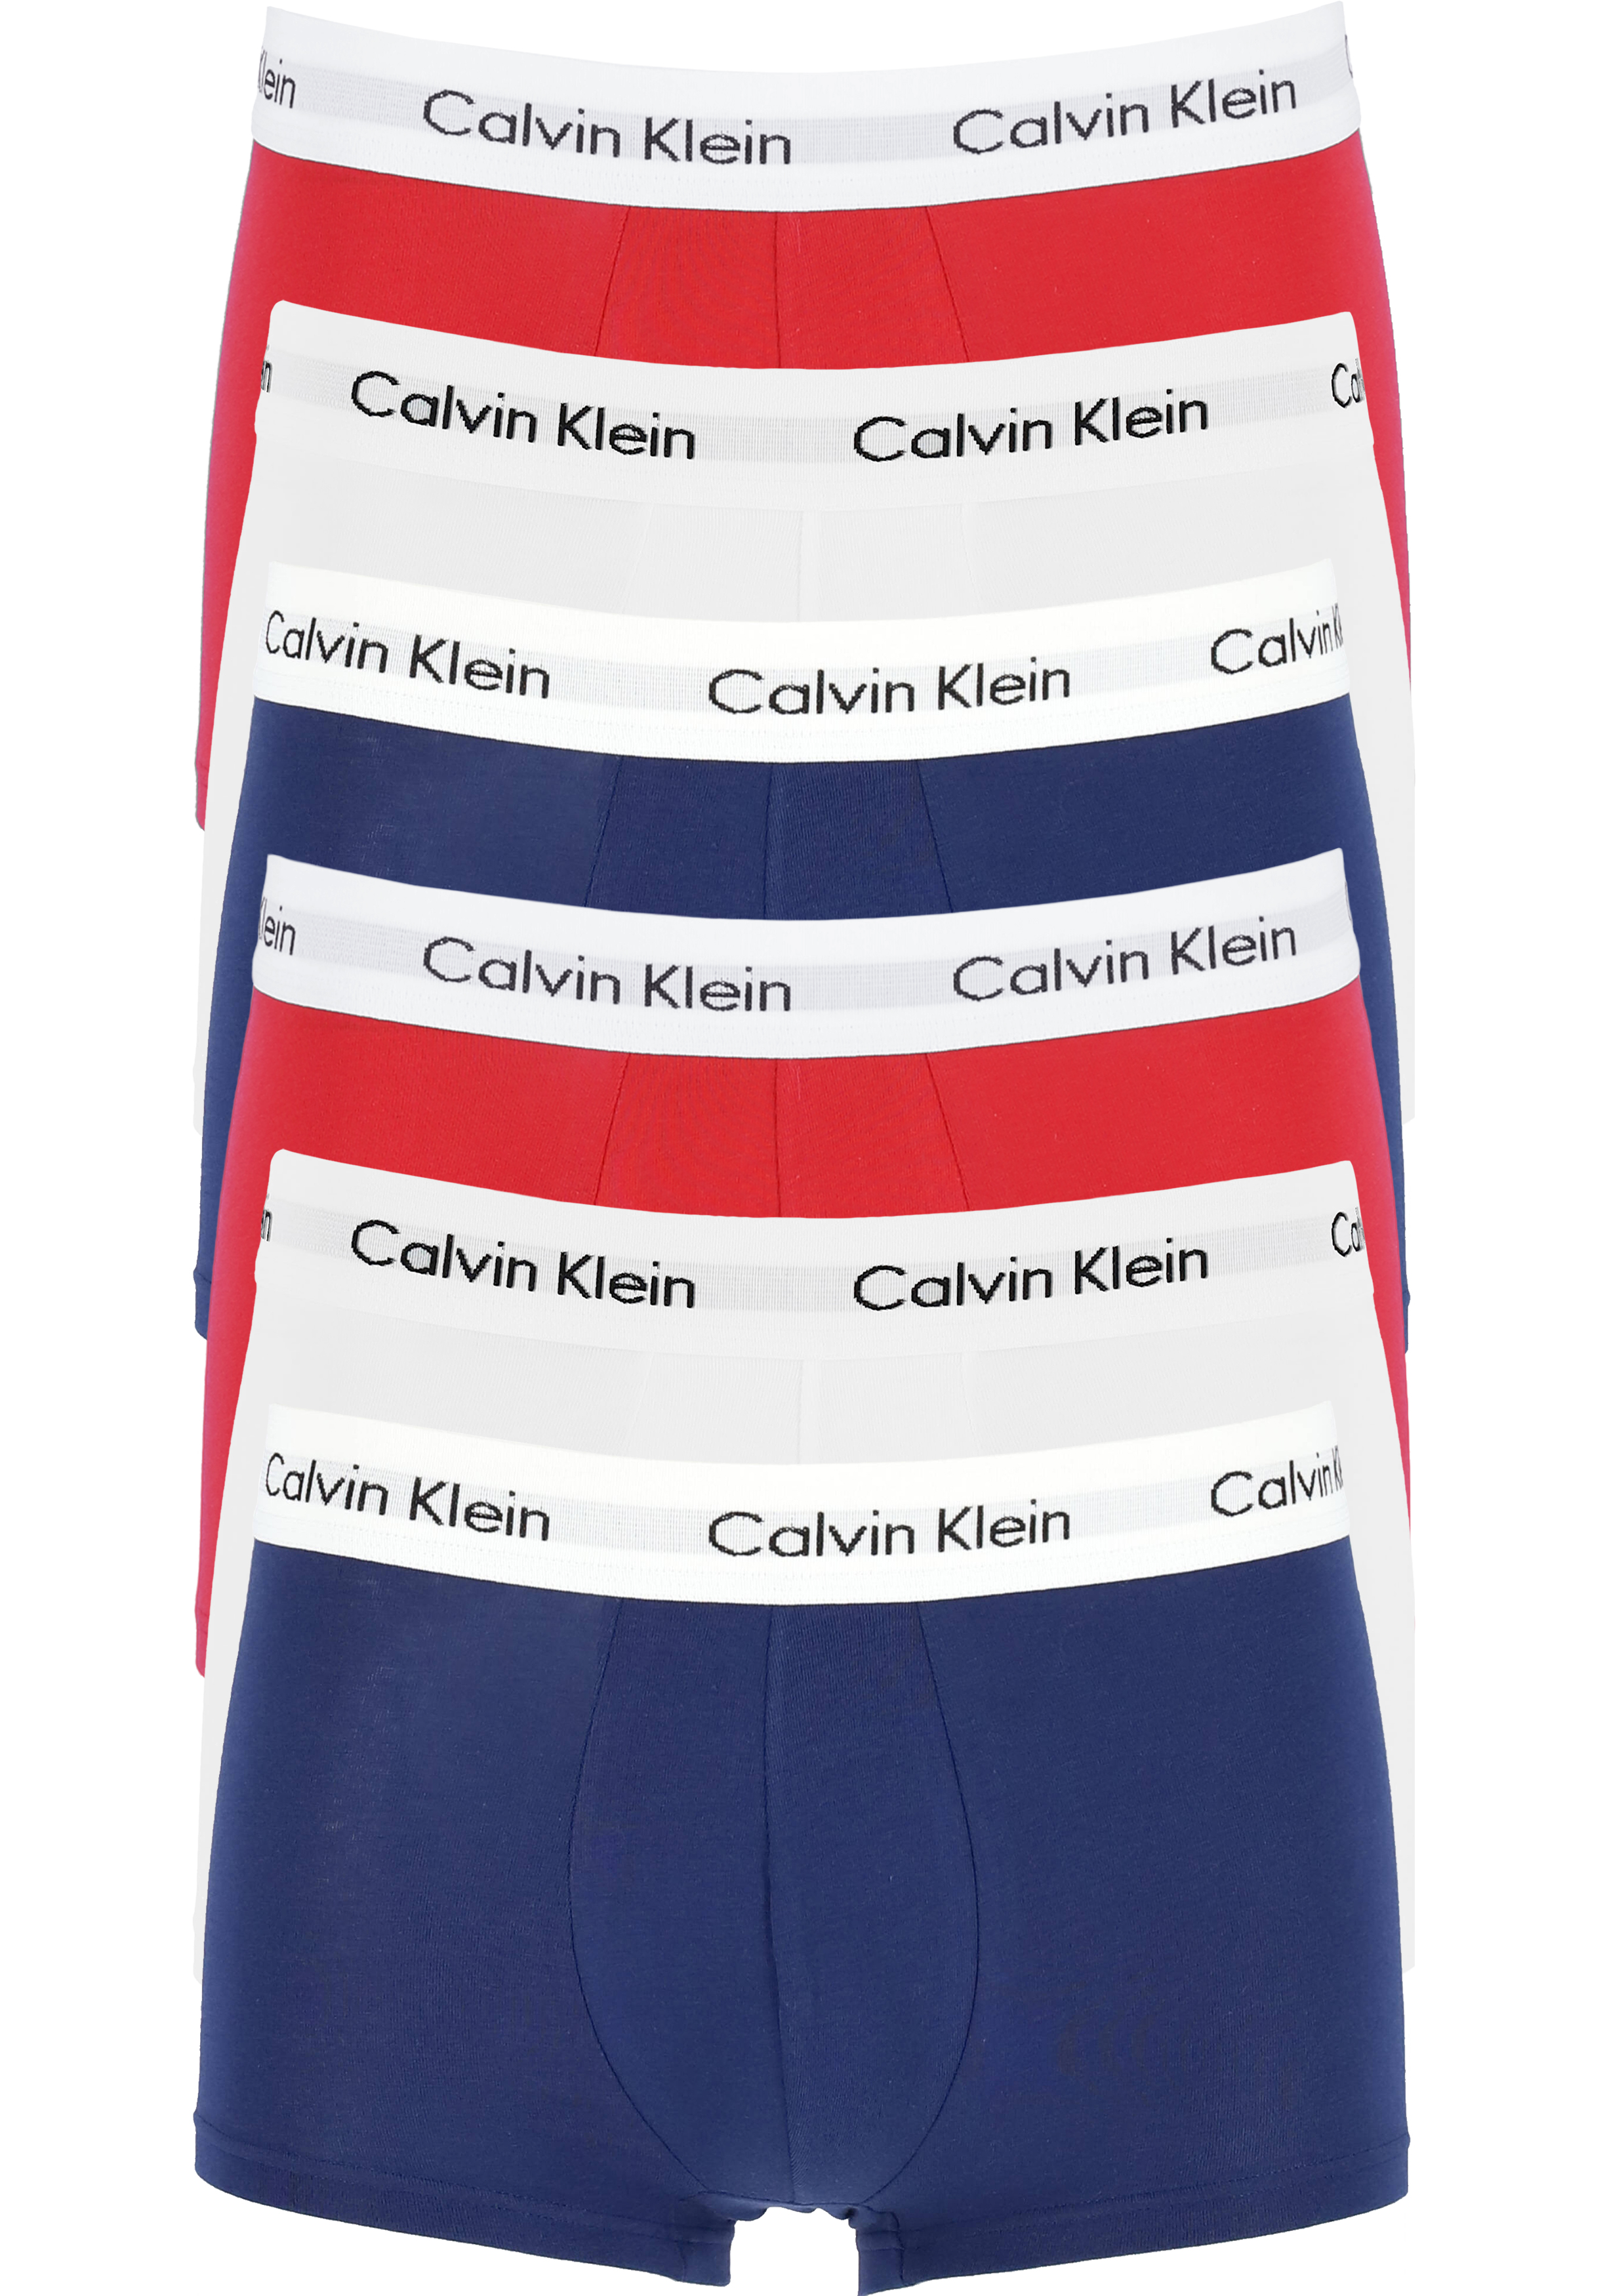 Actie 6-pack: Calvin Klein low rise trunks, heren boxers kort,... - Shop de nieuwste voorjaarsmode